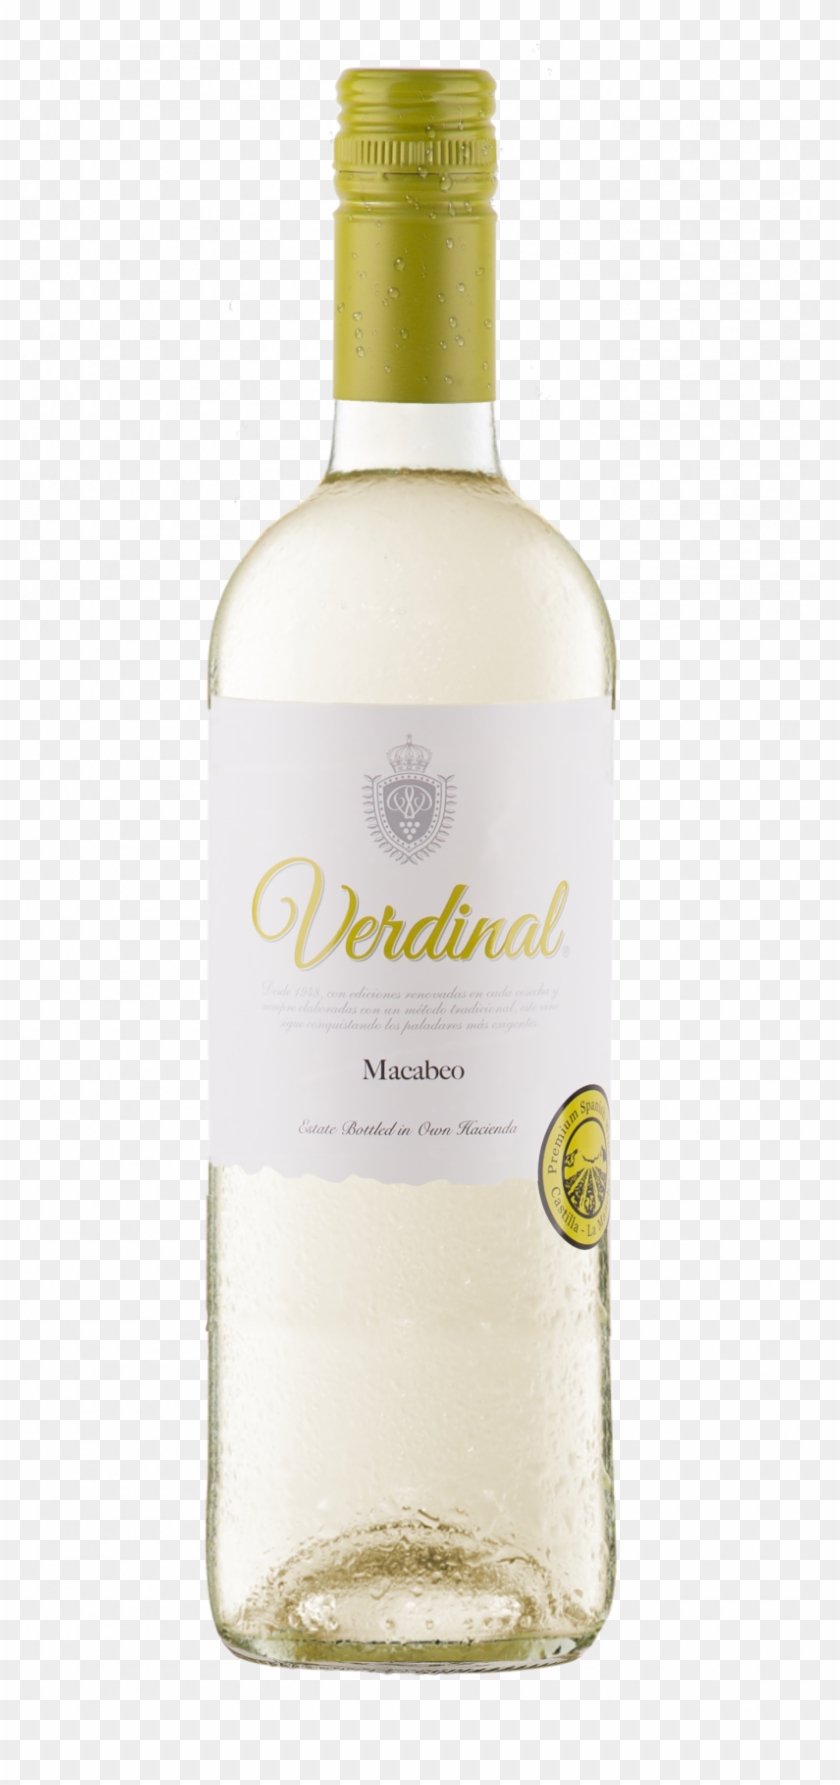 Verdinal Macabeo, La Mancha - El Desperado Wine Clipart #3420228